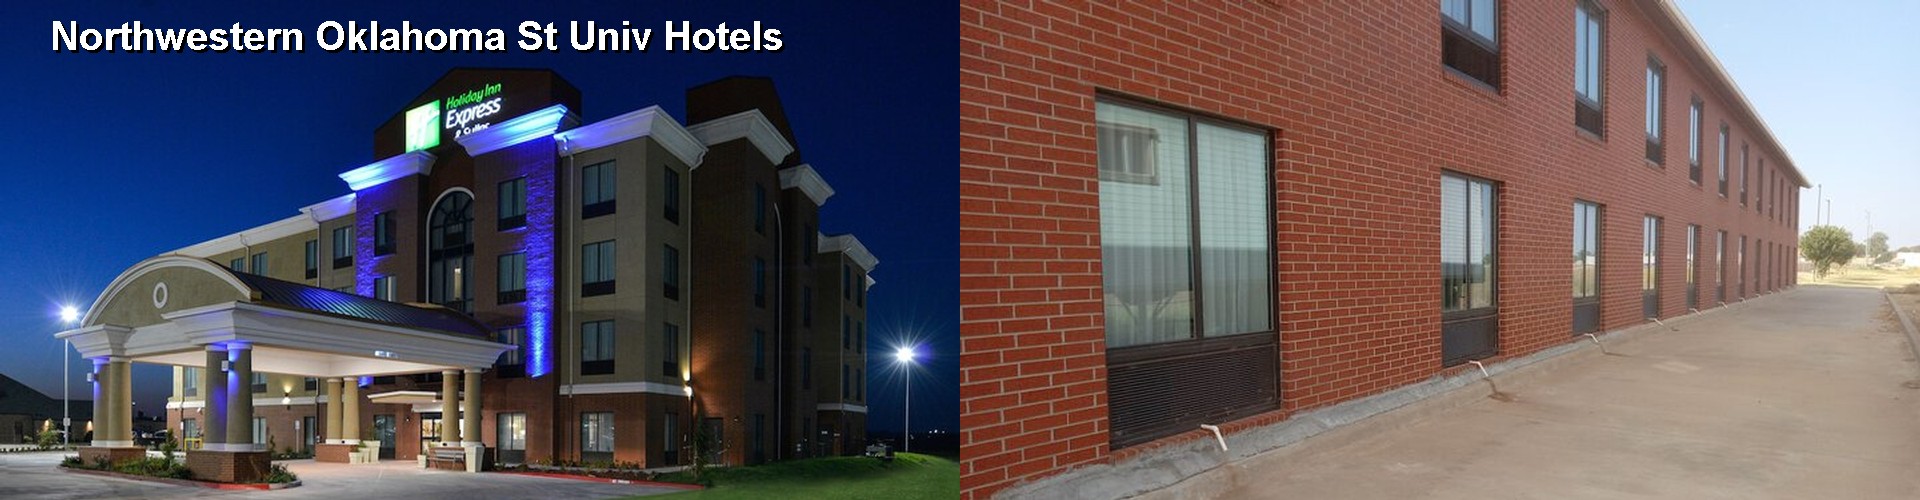 3 Best Hotels near Northwestern Oklahoma St Univ